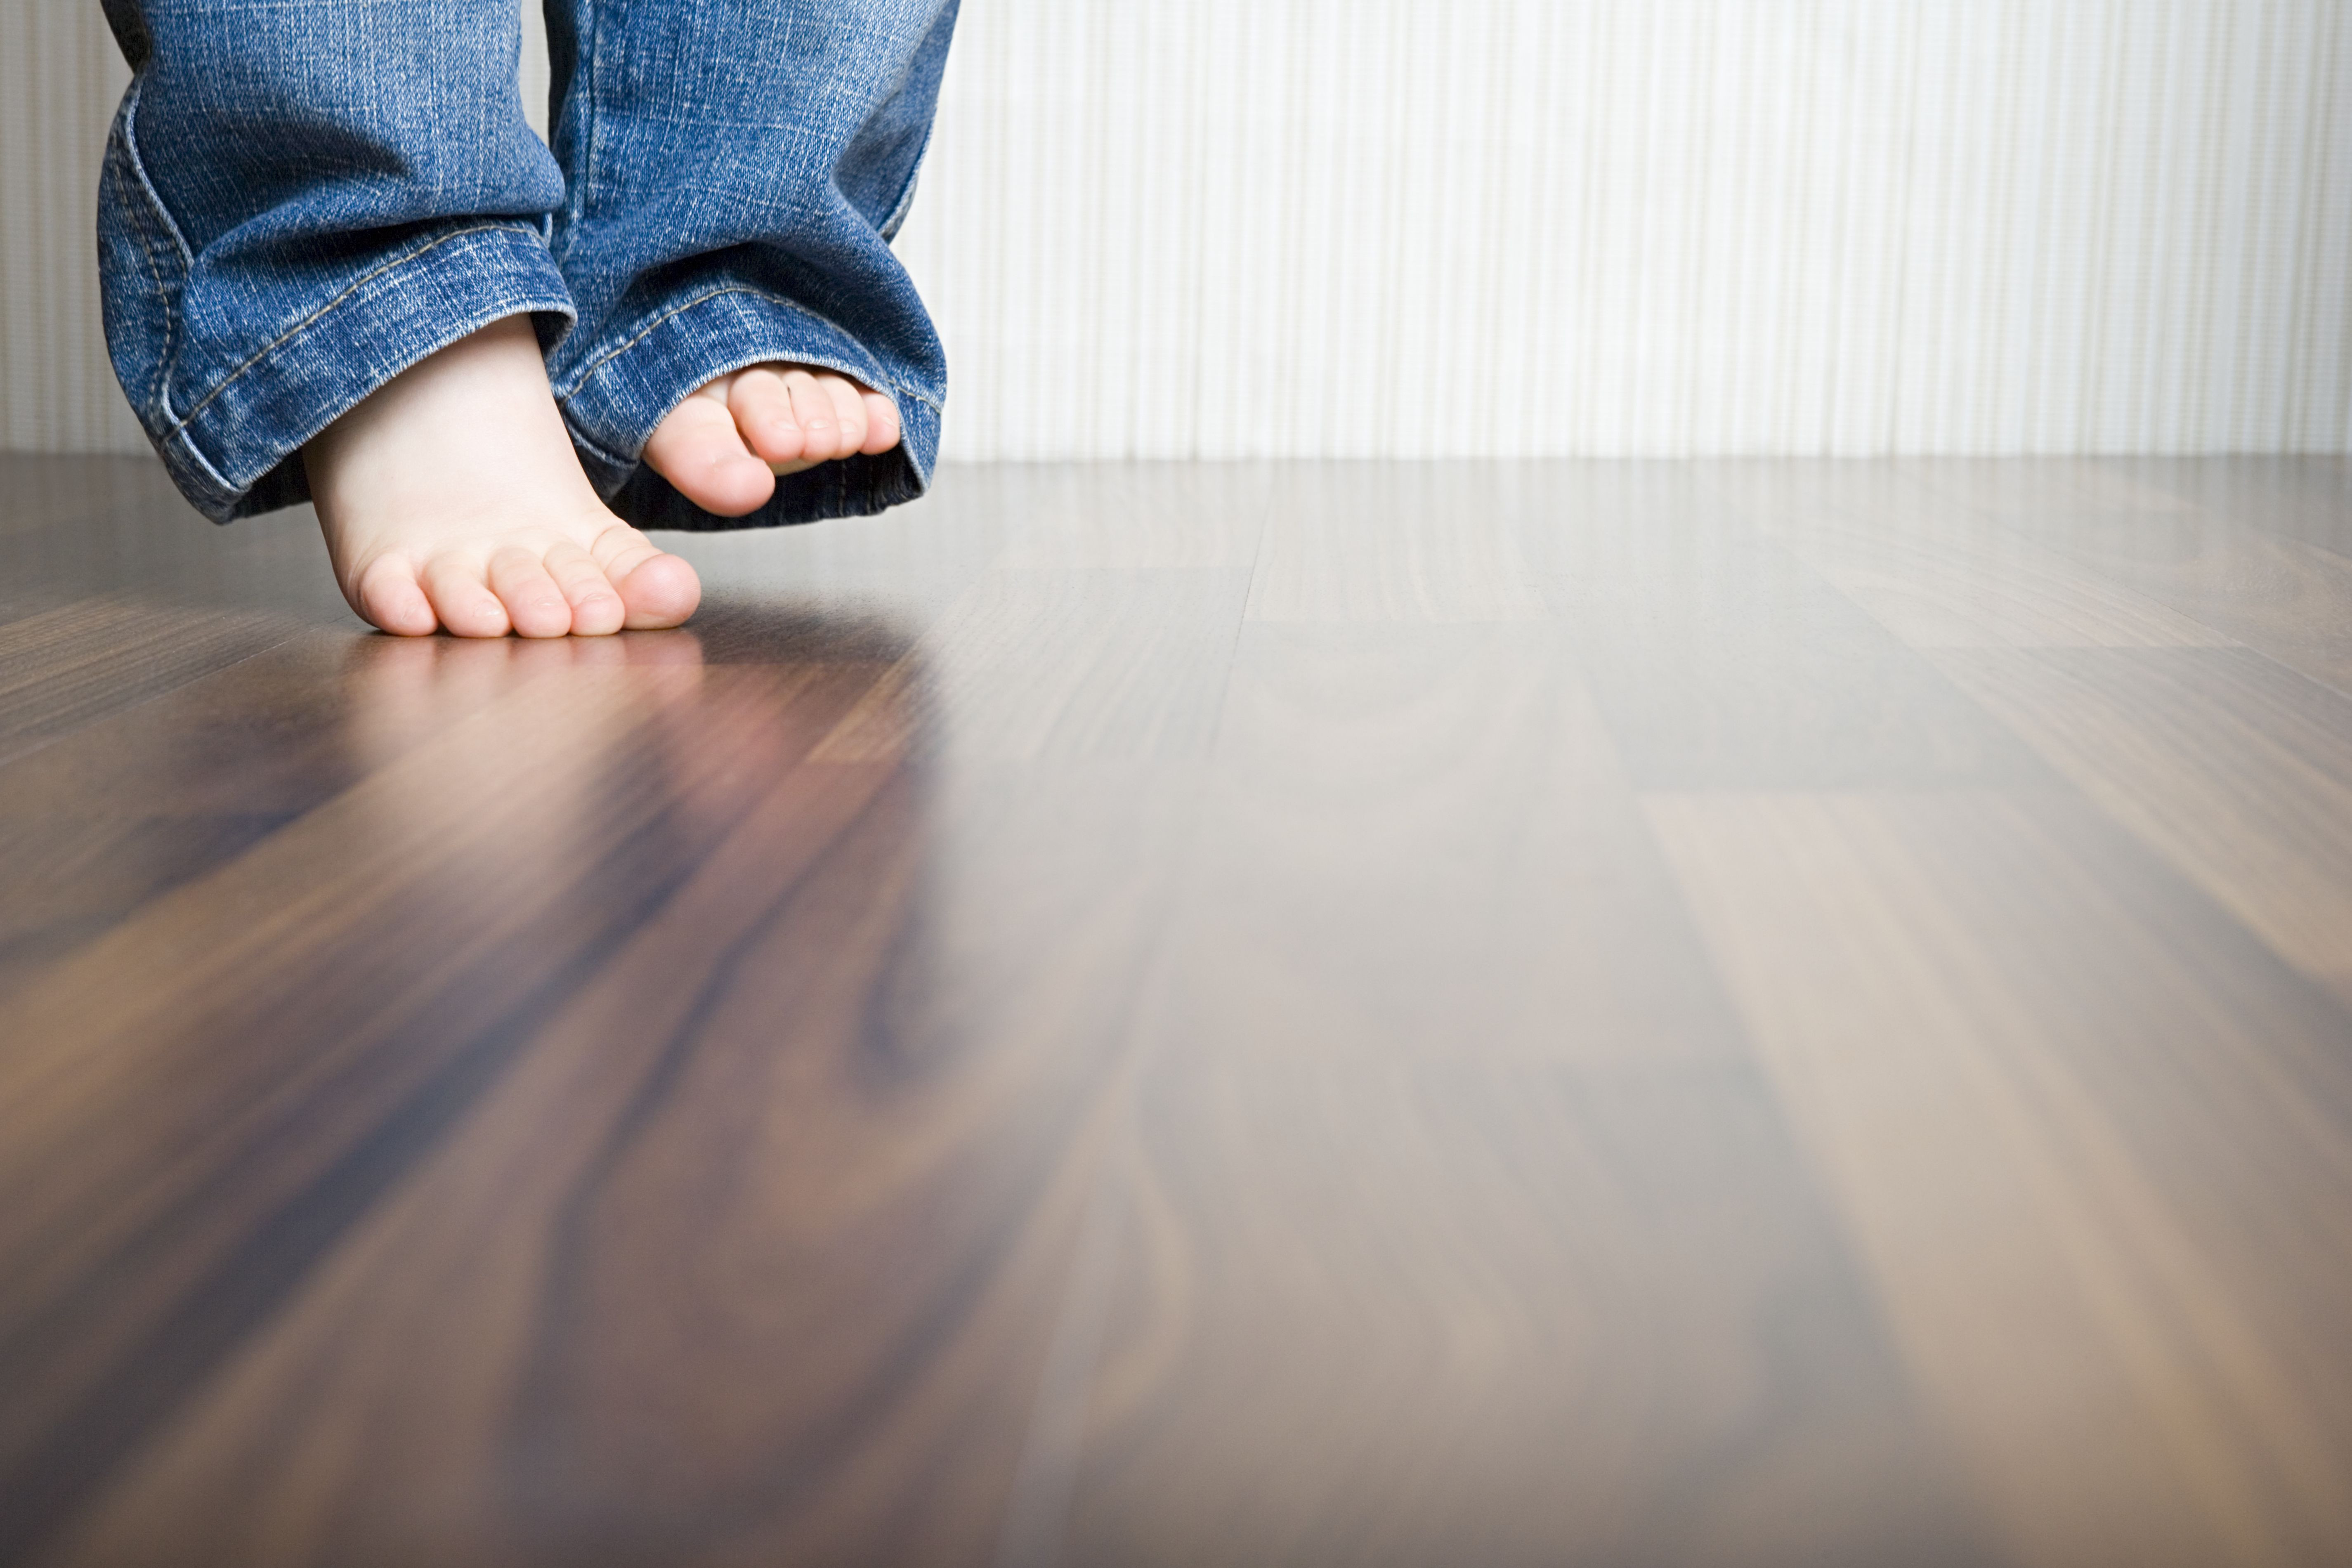 hardwood floor cost per foot of how to clean hardwood floors best way to clean wood flooring regarding 1512149908 gettyimages 75403973